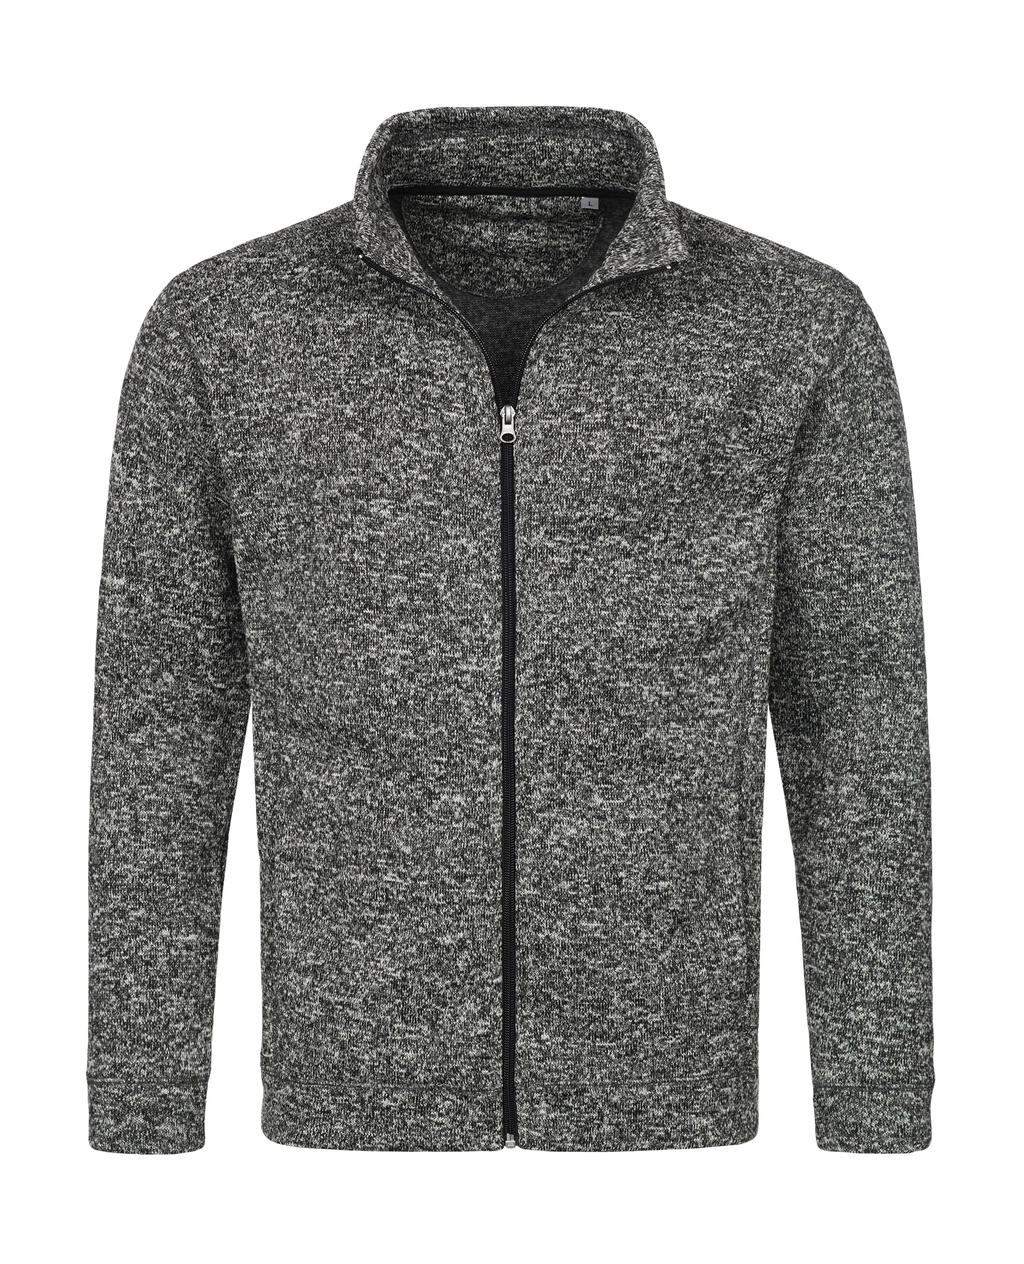 Knit Fleece Jacket zum Besticken und Bedrucken in der Farbe Dark Grey Melange mit Ihren Logo, Schriftzug oder Motiv.